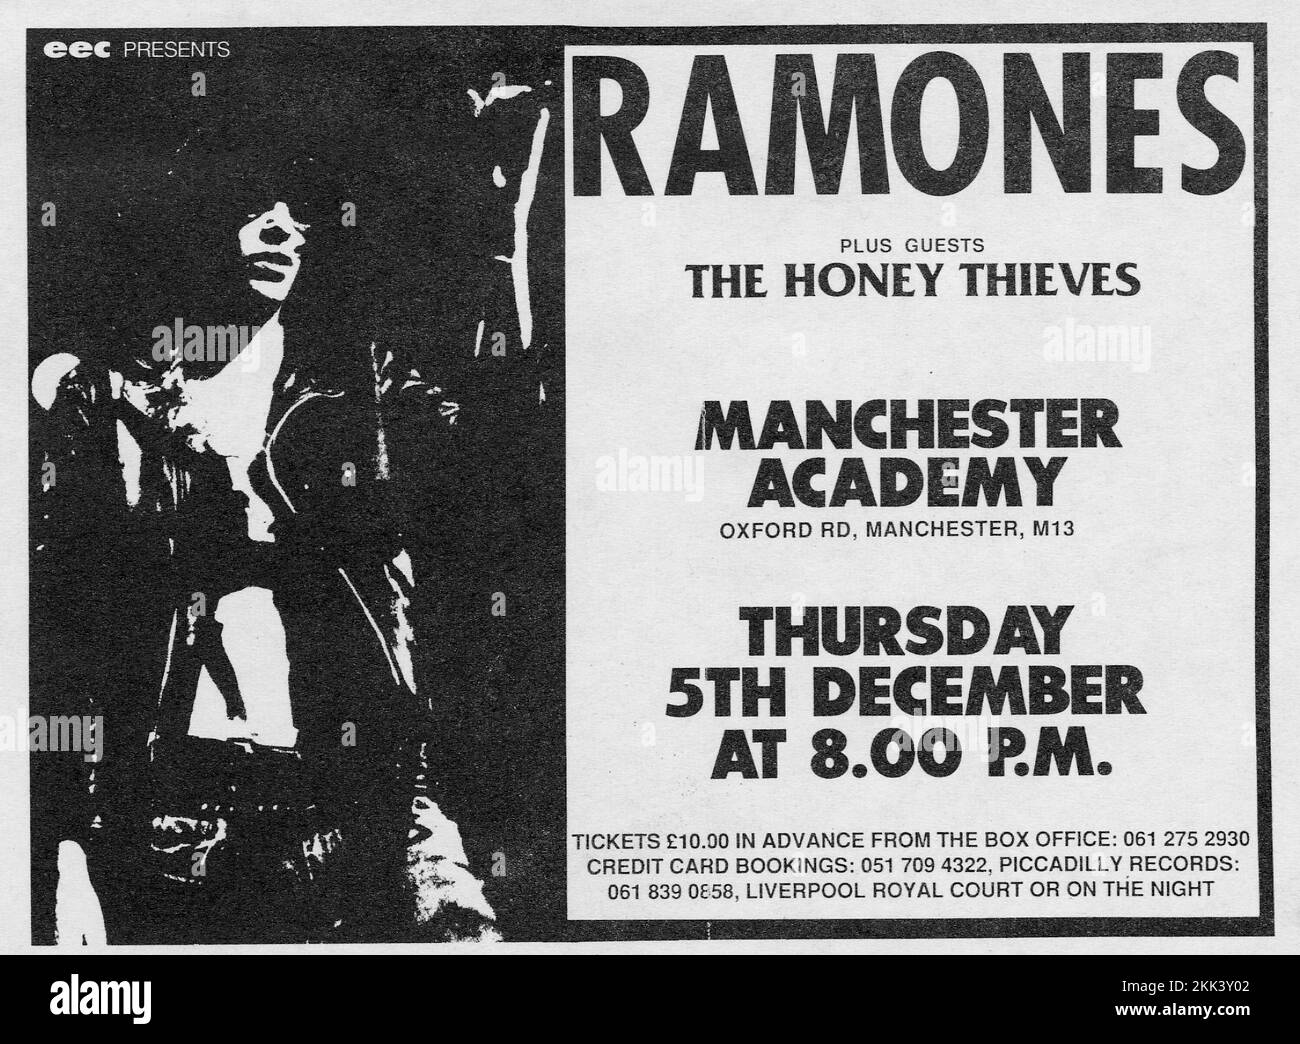 Die Ramones, Konzertflyer. Manchester Academy Oxford Road 5. 1985. Dezember. Unterstütze Die Honey Dieves. Tickets £10 für Piccadilly Records. Obwohl die Ramones zu dieser Zeit damit zu kämpfen hatten, viele Platten zu verkaufen, hatten sie immer noch einen guten Hardcore, um die Tour zu unterstützen, sowie eine neue Generation von Kindern, die neugierig auf eine Punk-Legende sind. Stockfoto